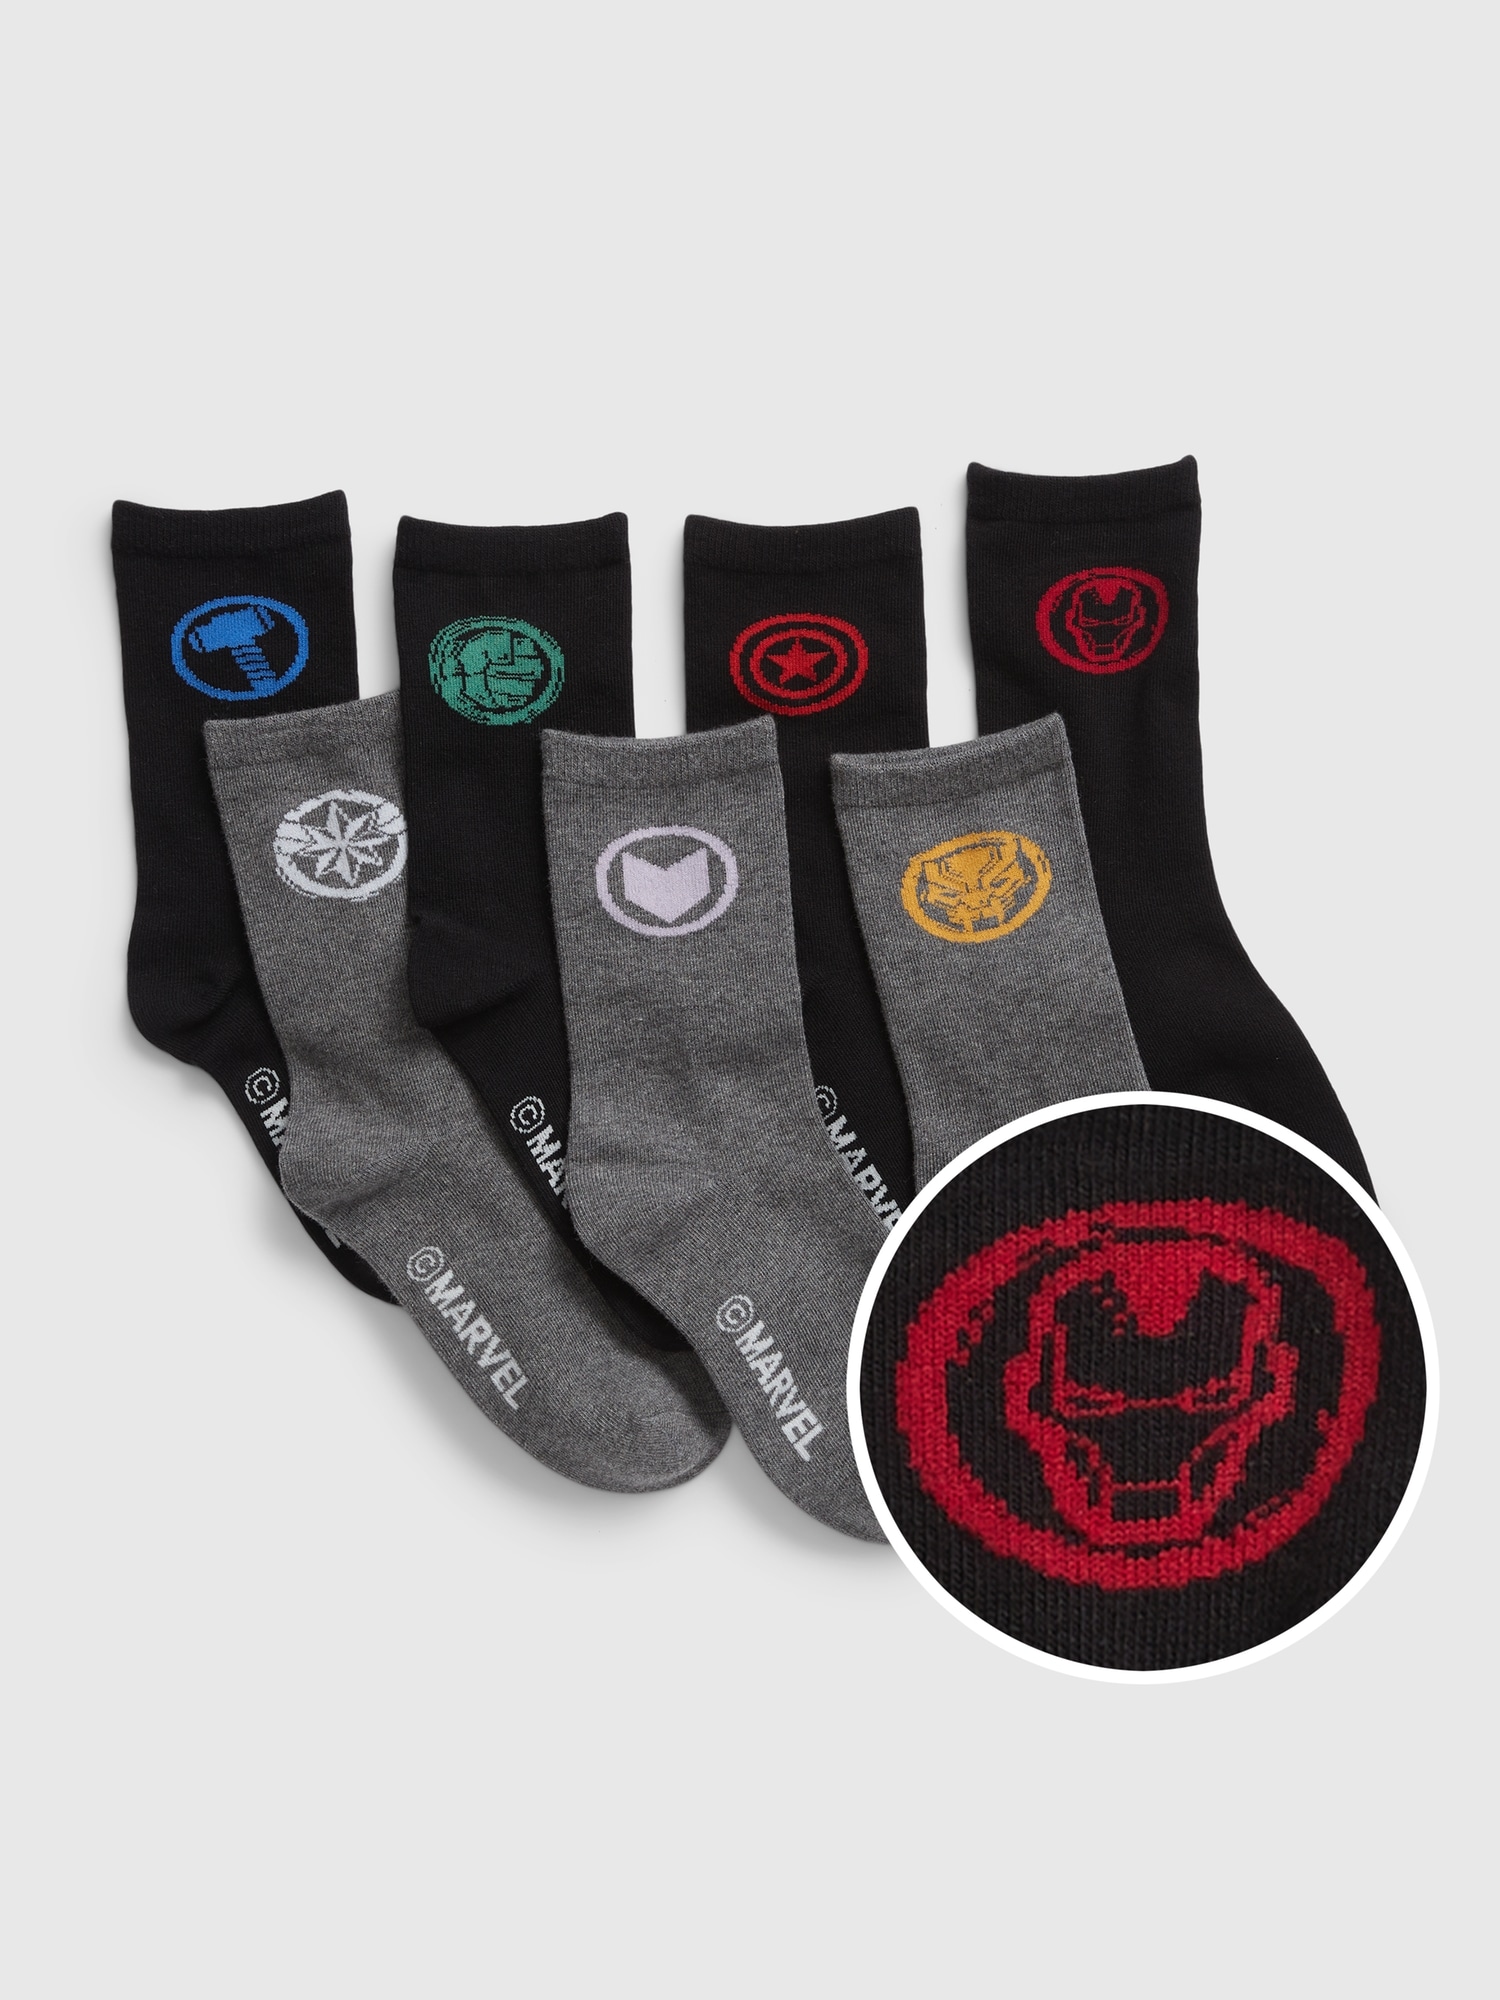 Marvel Athletic Socks for Men